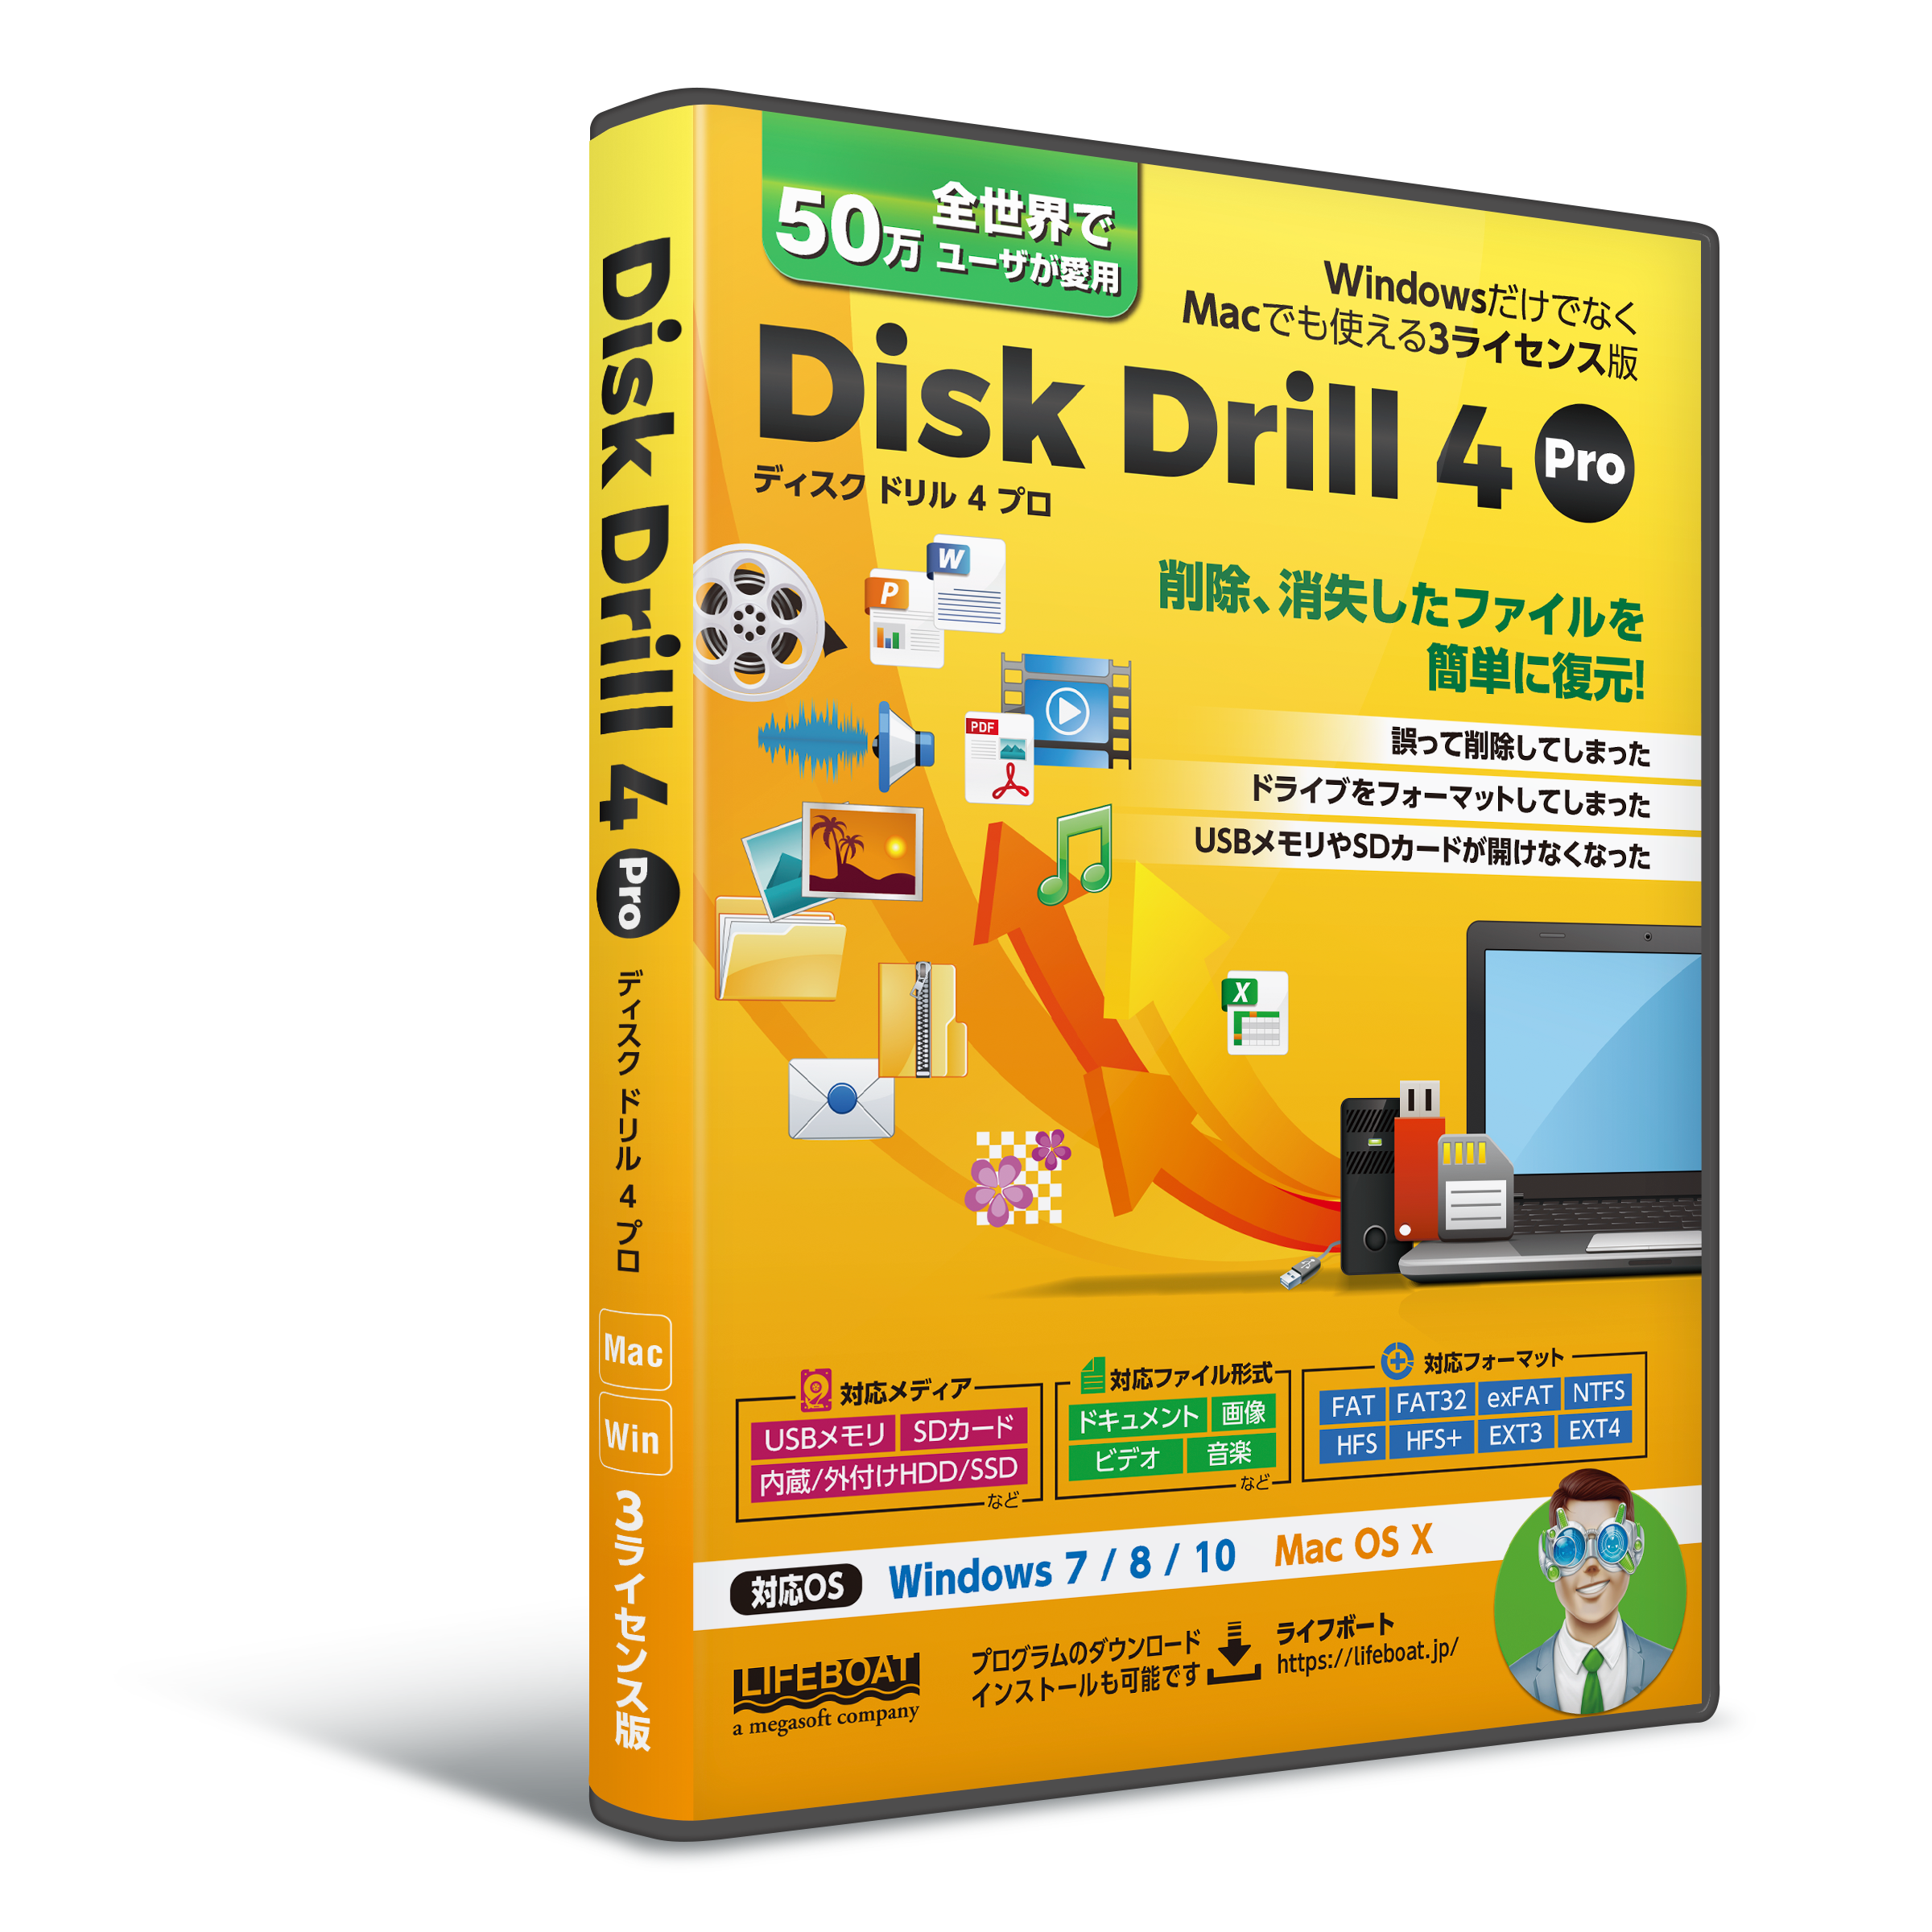 Windows Macに対応した消失データ復元ツール Disk Drill 4 の販売を開始 株式会社ライフボートのプレスリリース